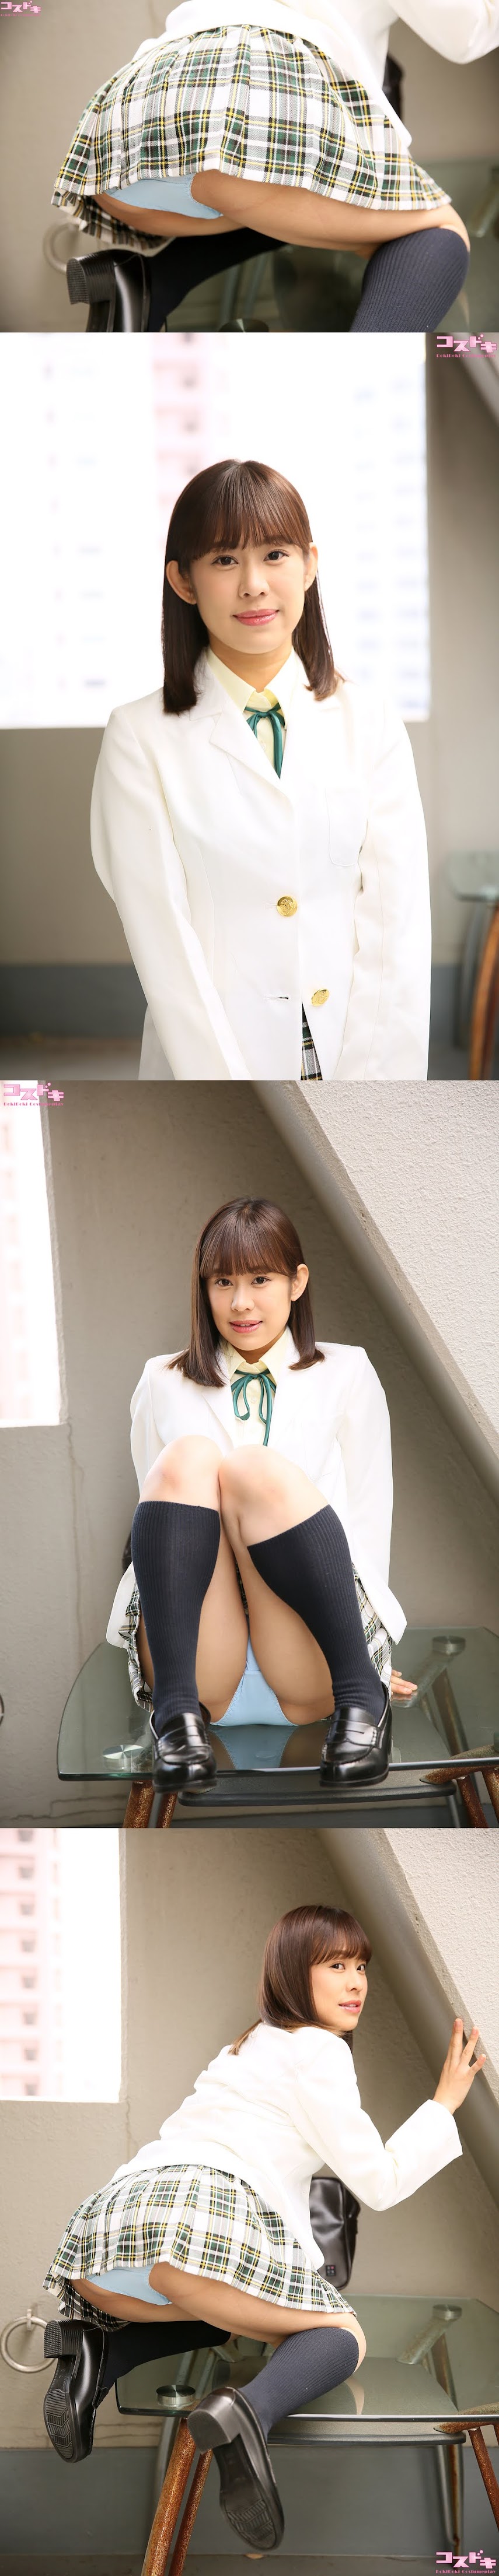 [Cosdoki] Sana Miyazawa 宮沢佐奈 miyazawasana pic seifukujacket1   P214533 - idols